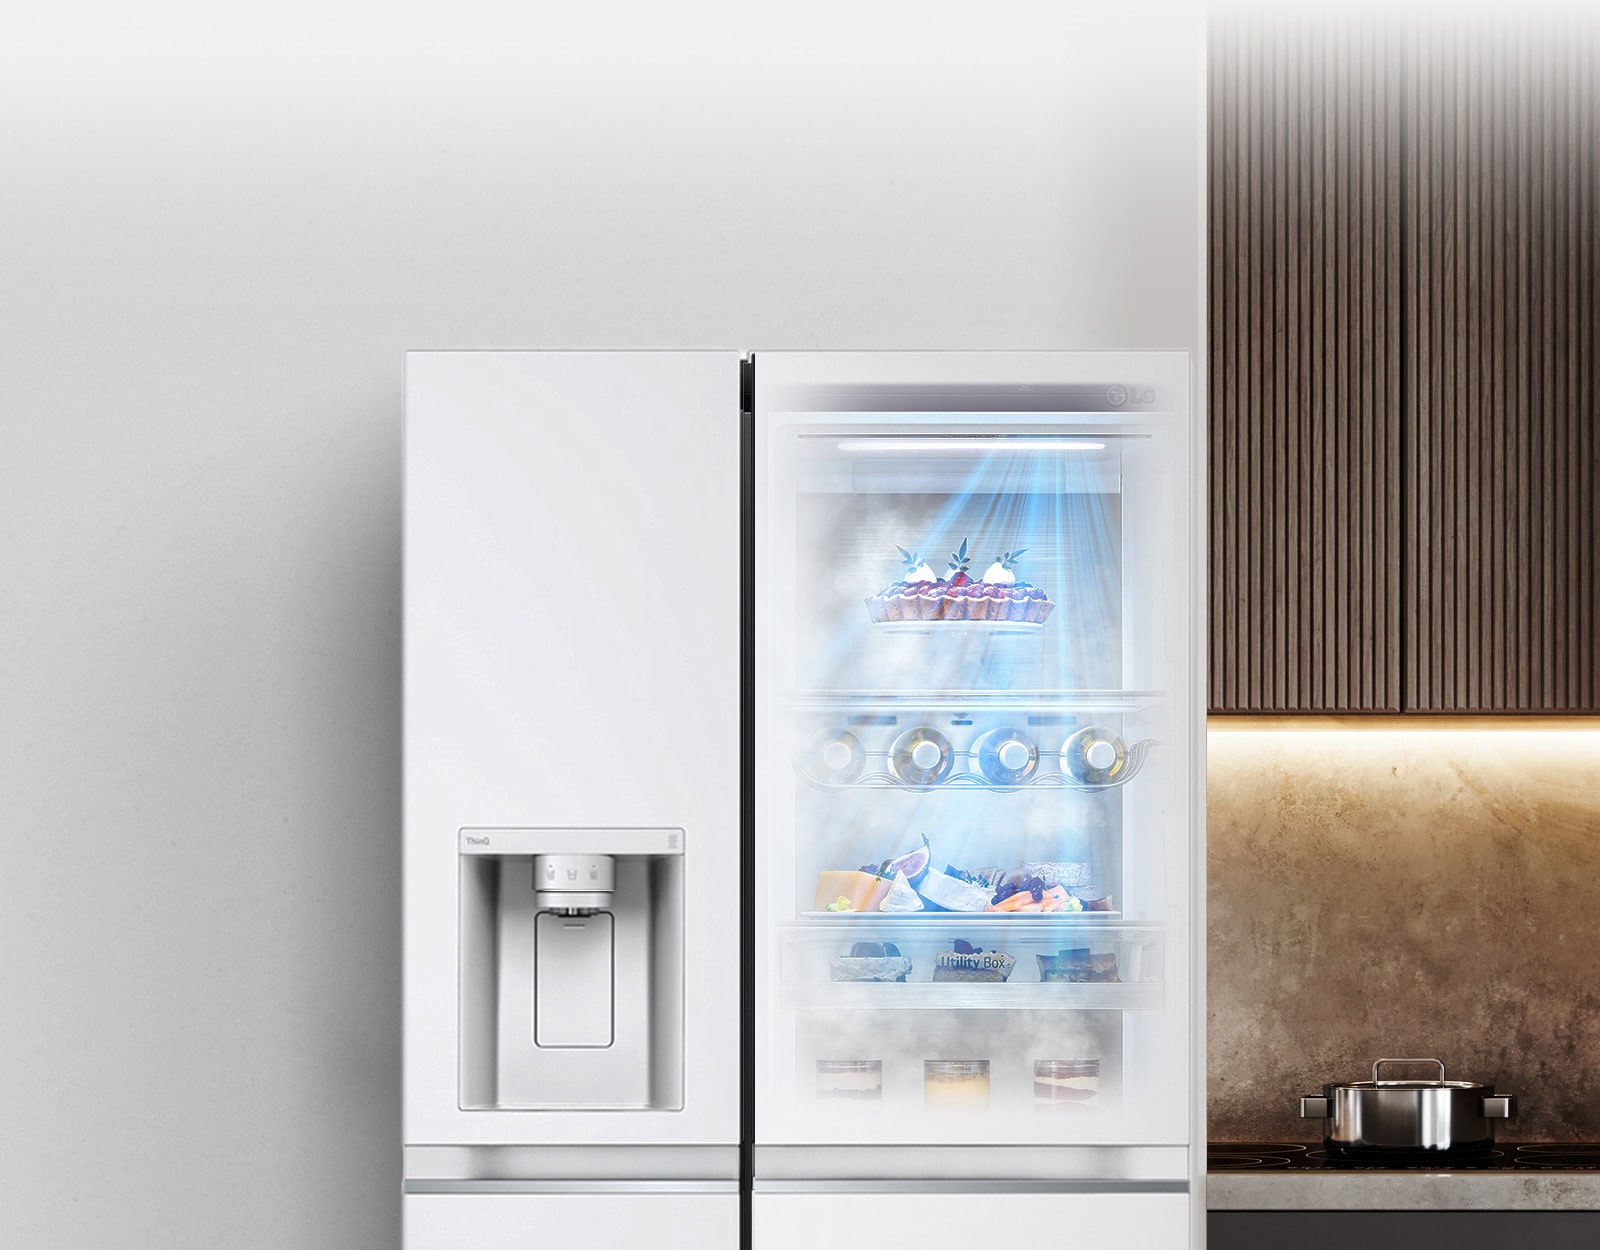 Pogled od spredaj na črni hladilnik InstaView, osvetljen v notranjosti.  Vsebina hladilnika je vidna skozi vrata InstaView.  Svetlo modri žarki svetlobe osvetljujejo izdelke iz odprtin DoorCooling.